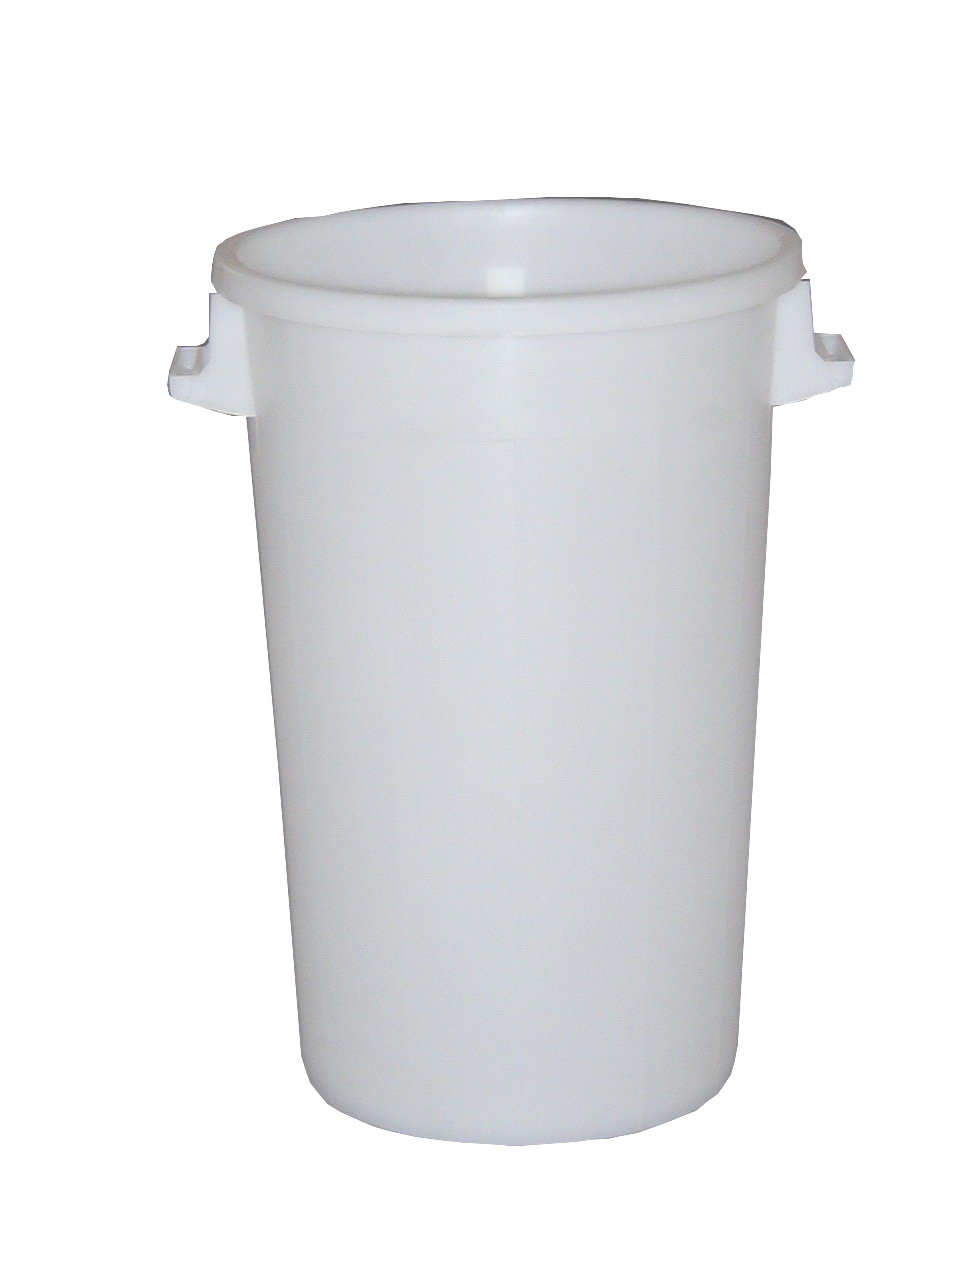 Poubelle 150 litres - Blanc